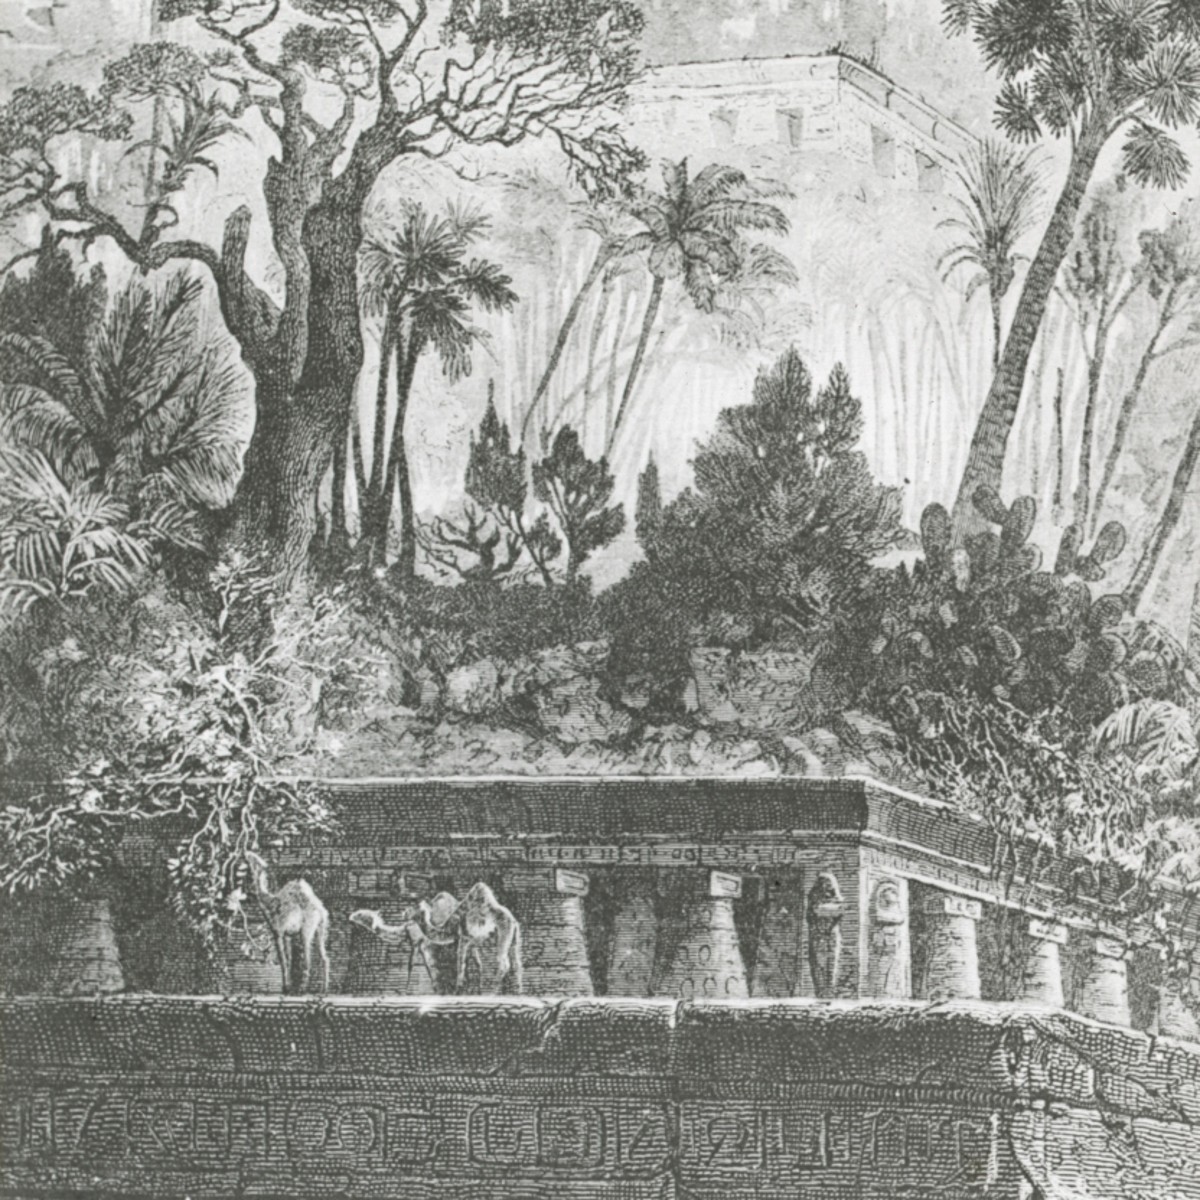 Hanging Gardens of Babylon (engraved depiction)